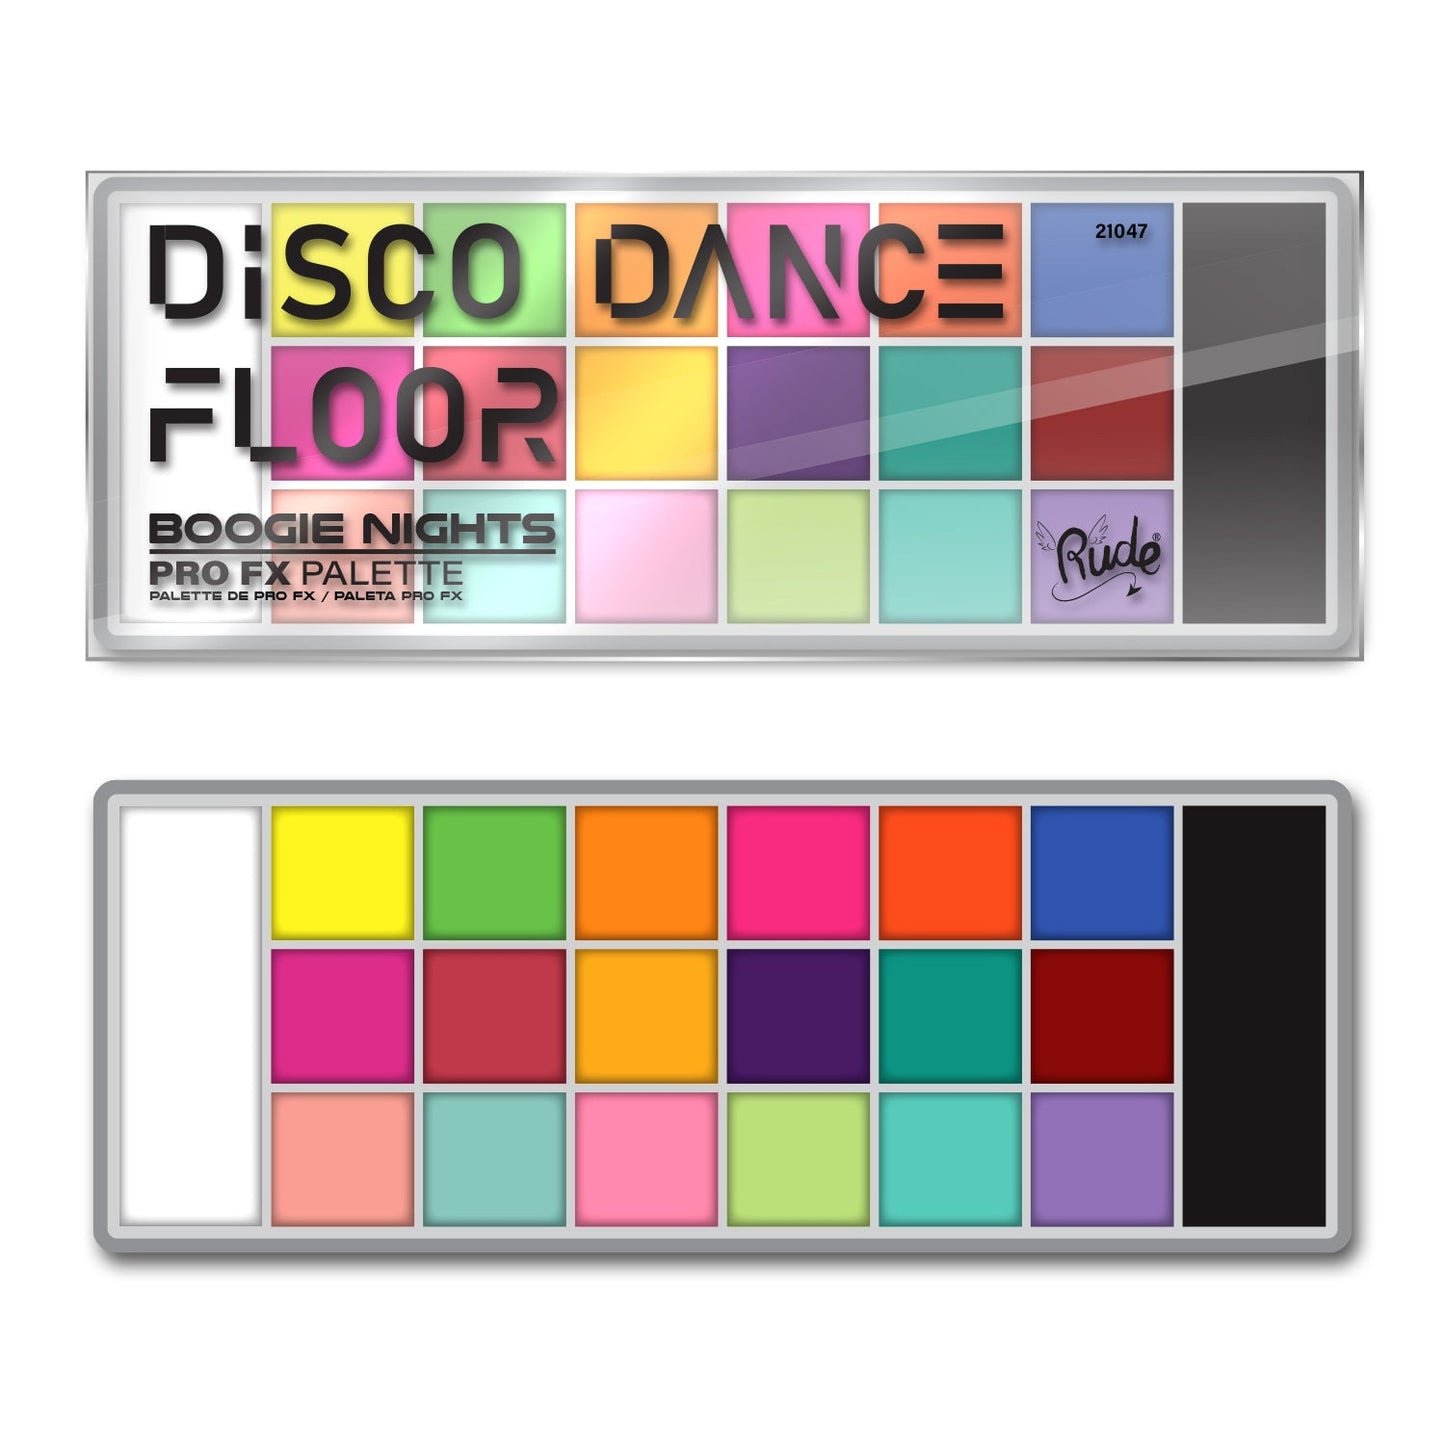 RUDE Disco Dance Floor Pro FX Palette - Boogie Nights